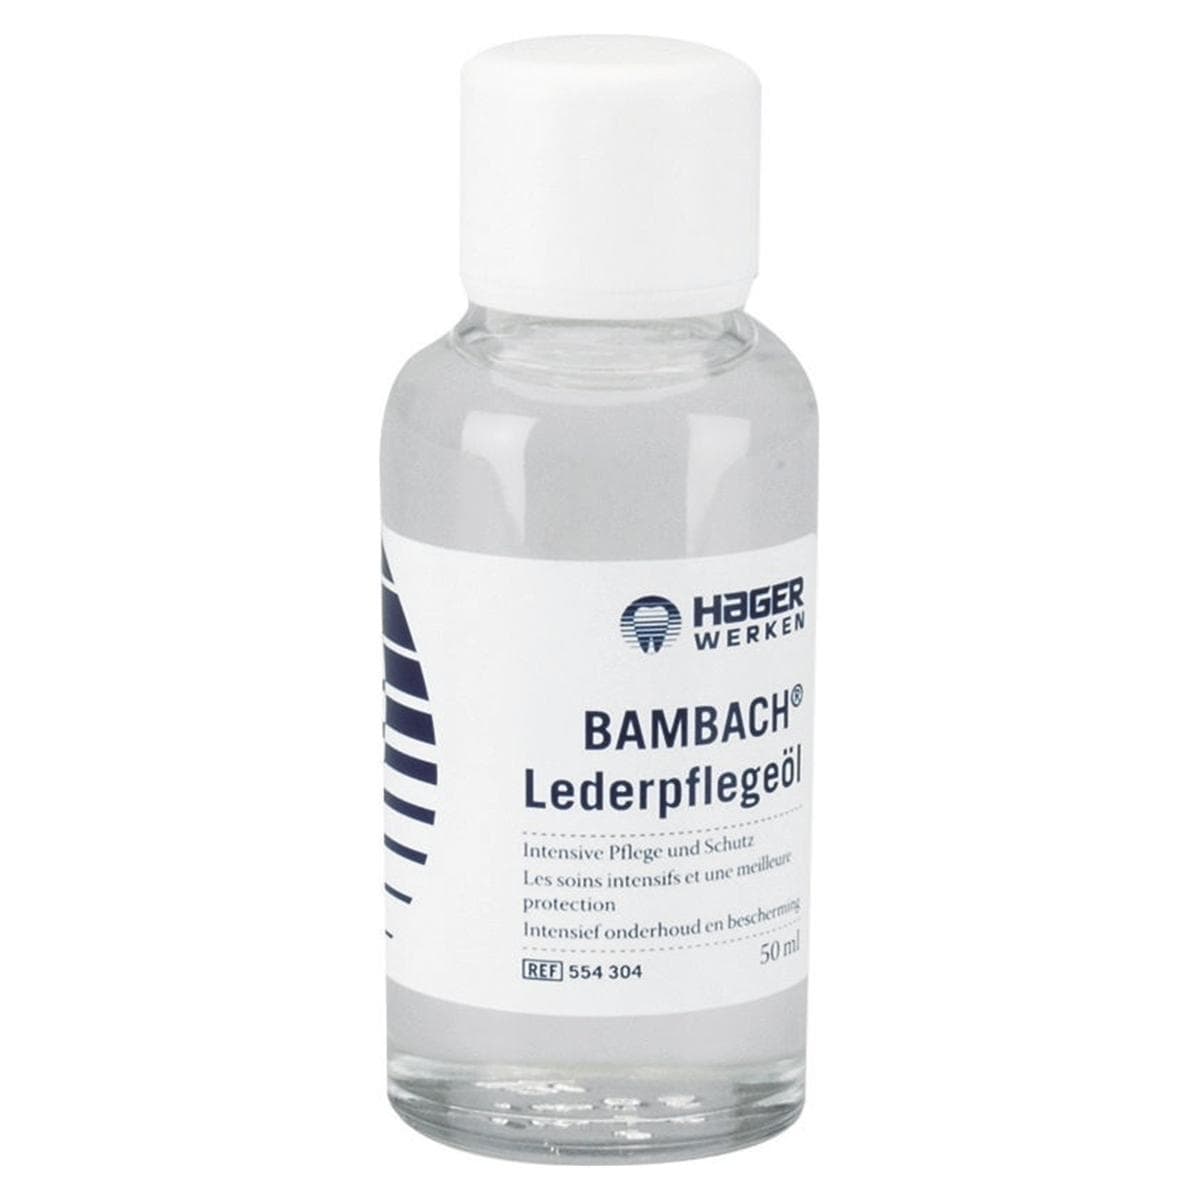 Bambach® Lederpflegeöl - Flasche 50 ml